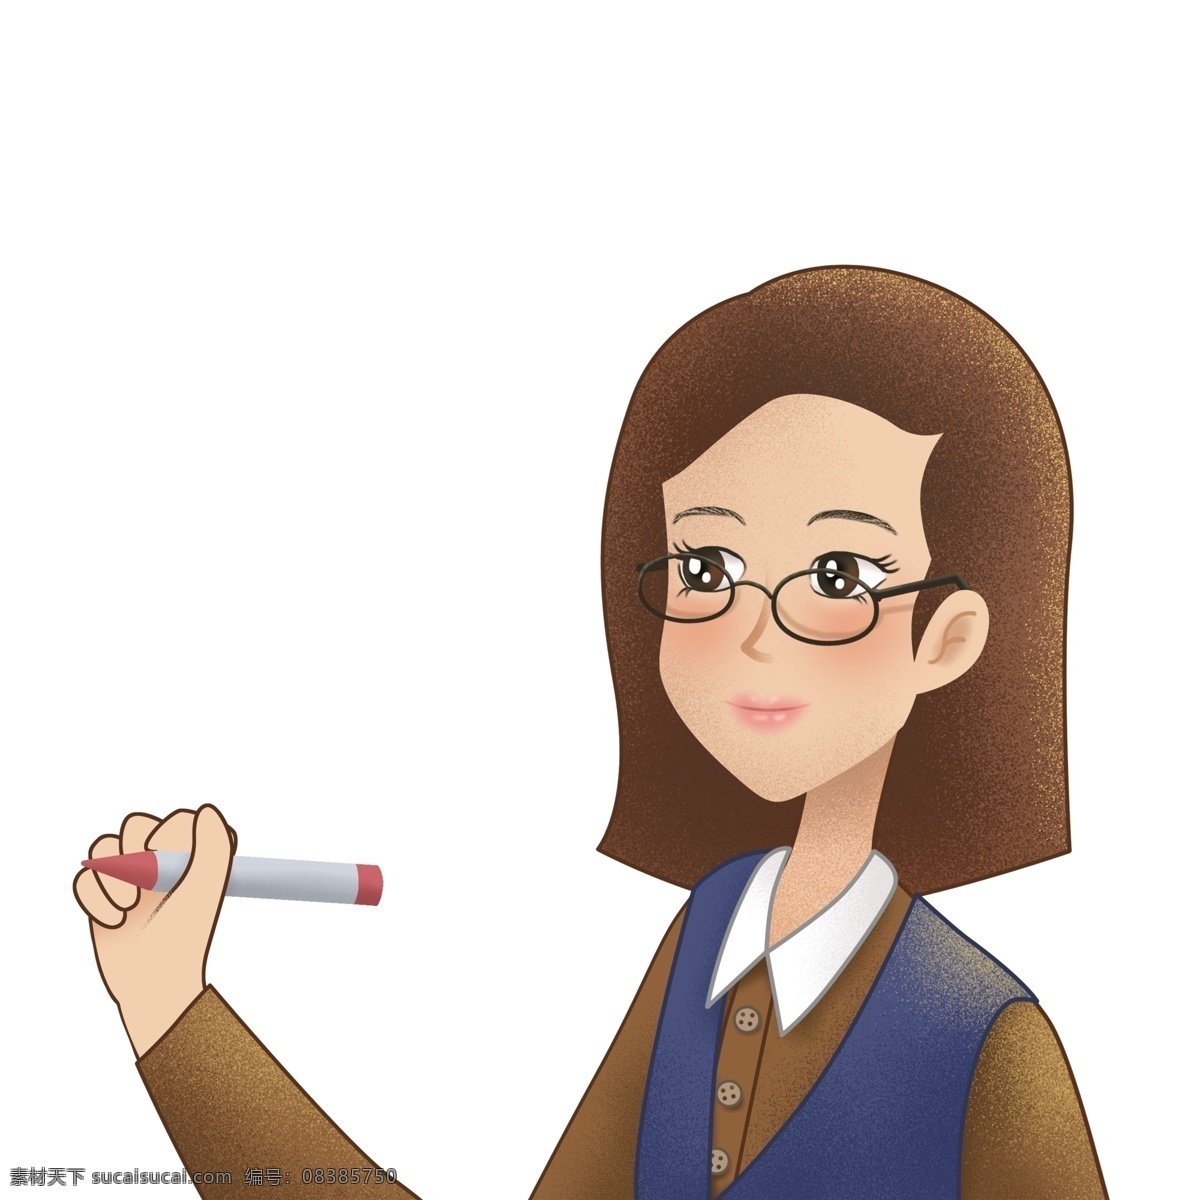 卡通 彩绘 戴 眼镜 女 老师 人物 商用 元素 女孩 插画 荧光笔 教师